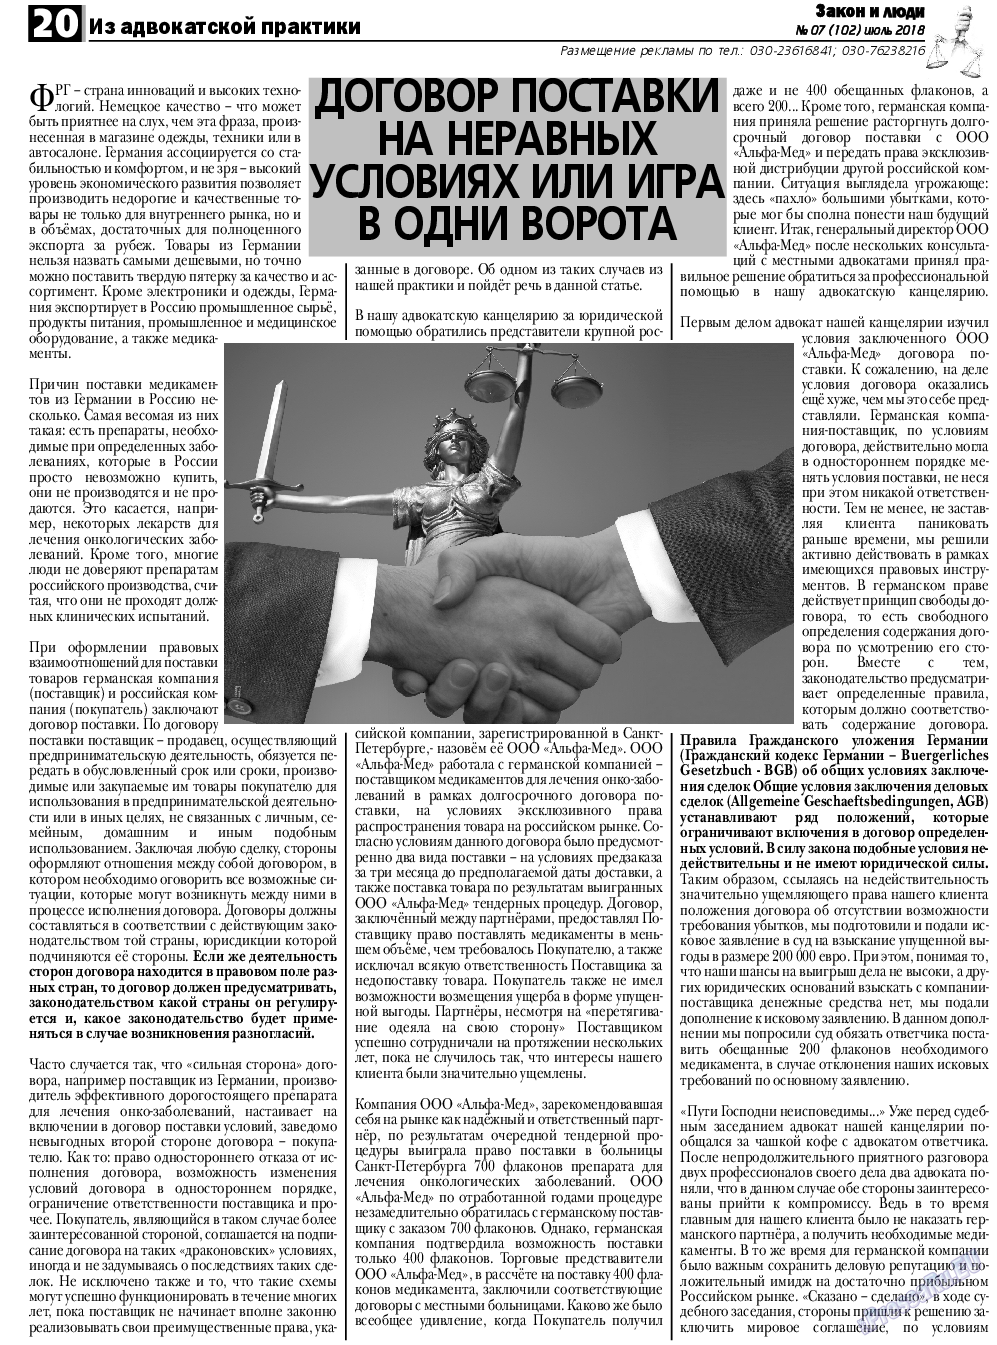 Закон и люди, газета. 2018 №7 стр.20